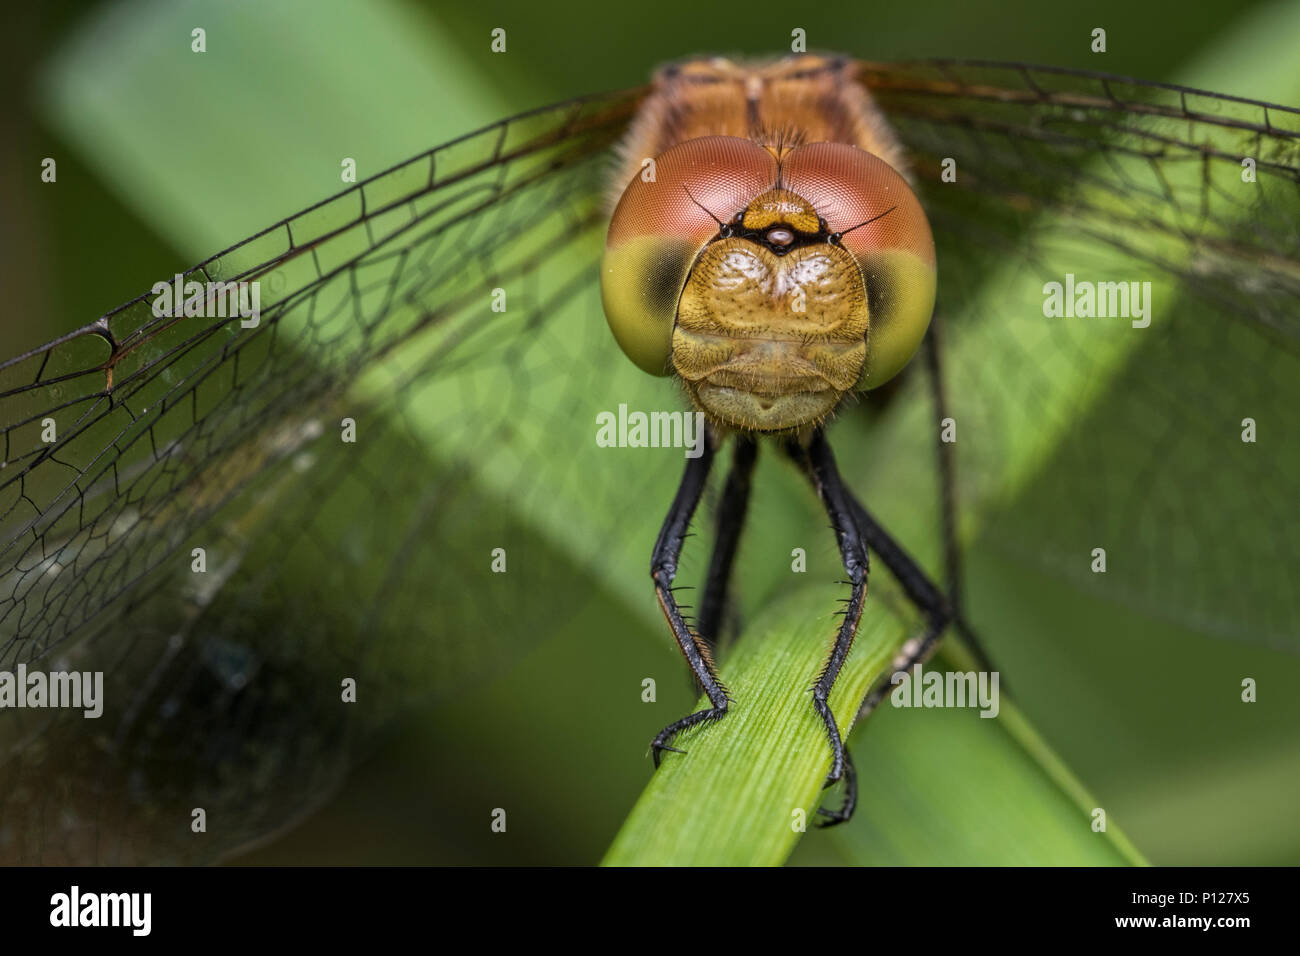 Gemeinsame Darter Dragonfly (Sympetrum striolatum) auf Gras Stammzellen thront. Tipperary, Irland Stockfoto